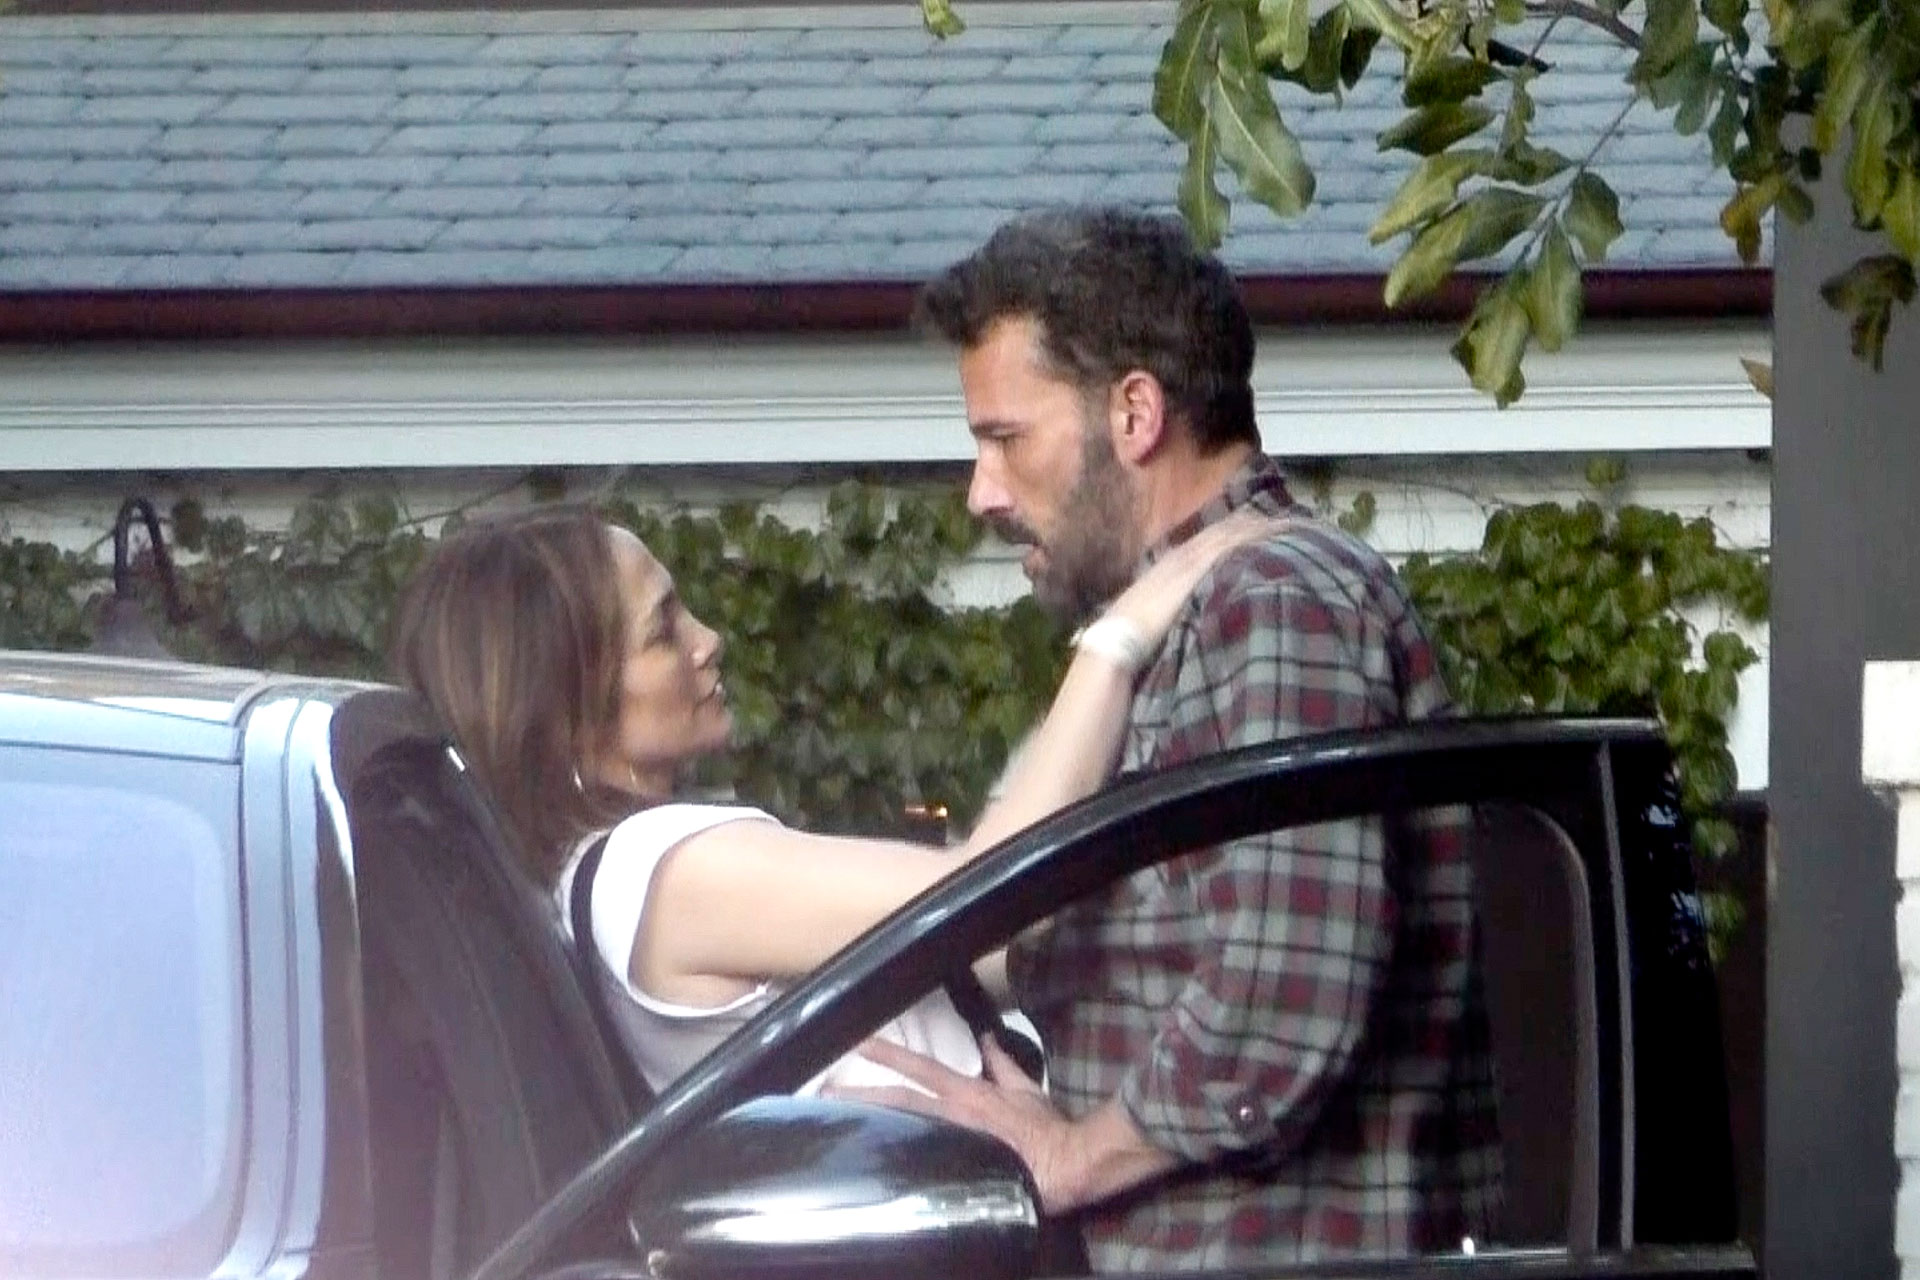 Pareja romántica. Jennifer Lopez y Ben Affleck fueron fotografiados cuando se despedían en la casa del actor y la artista regresaba a su casa. Él la acompañó hasta su auto y se dieron un apasionado beso